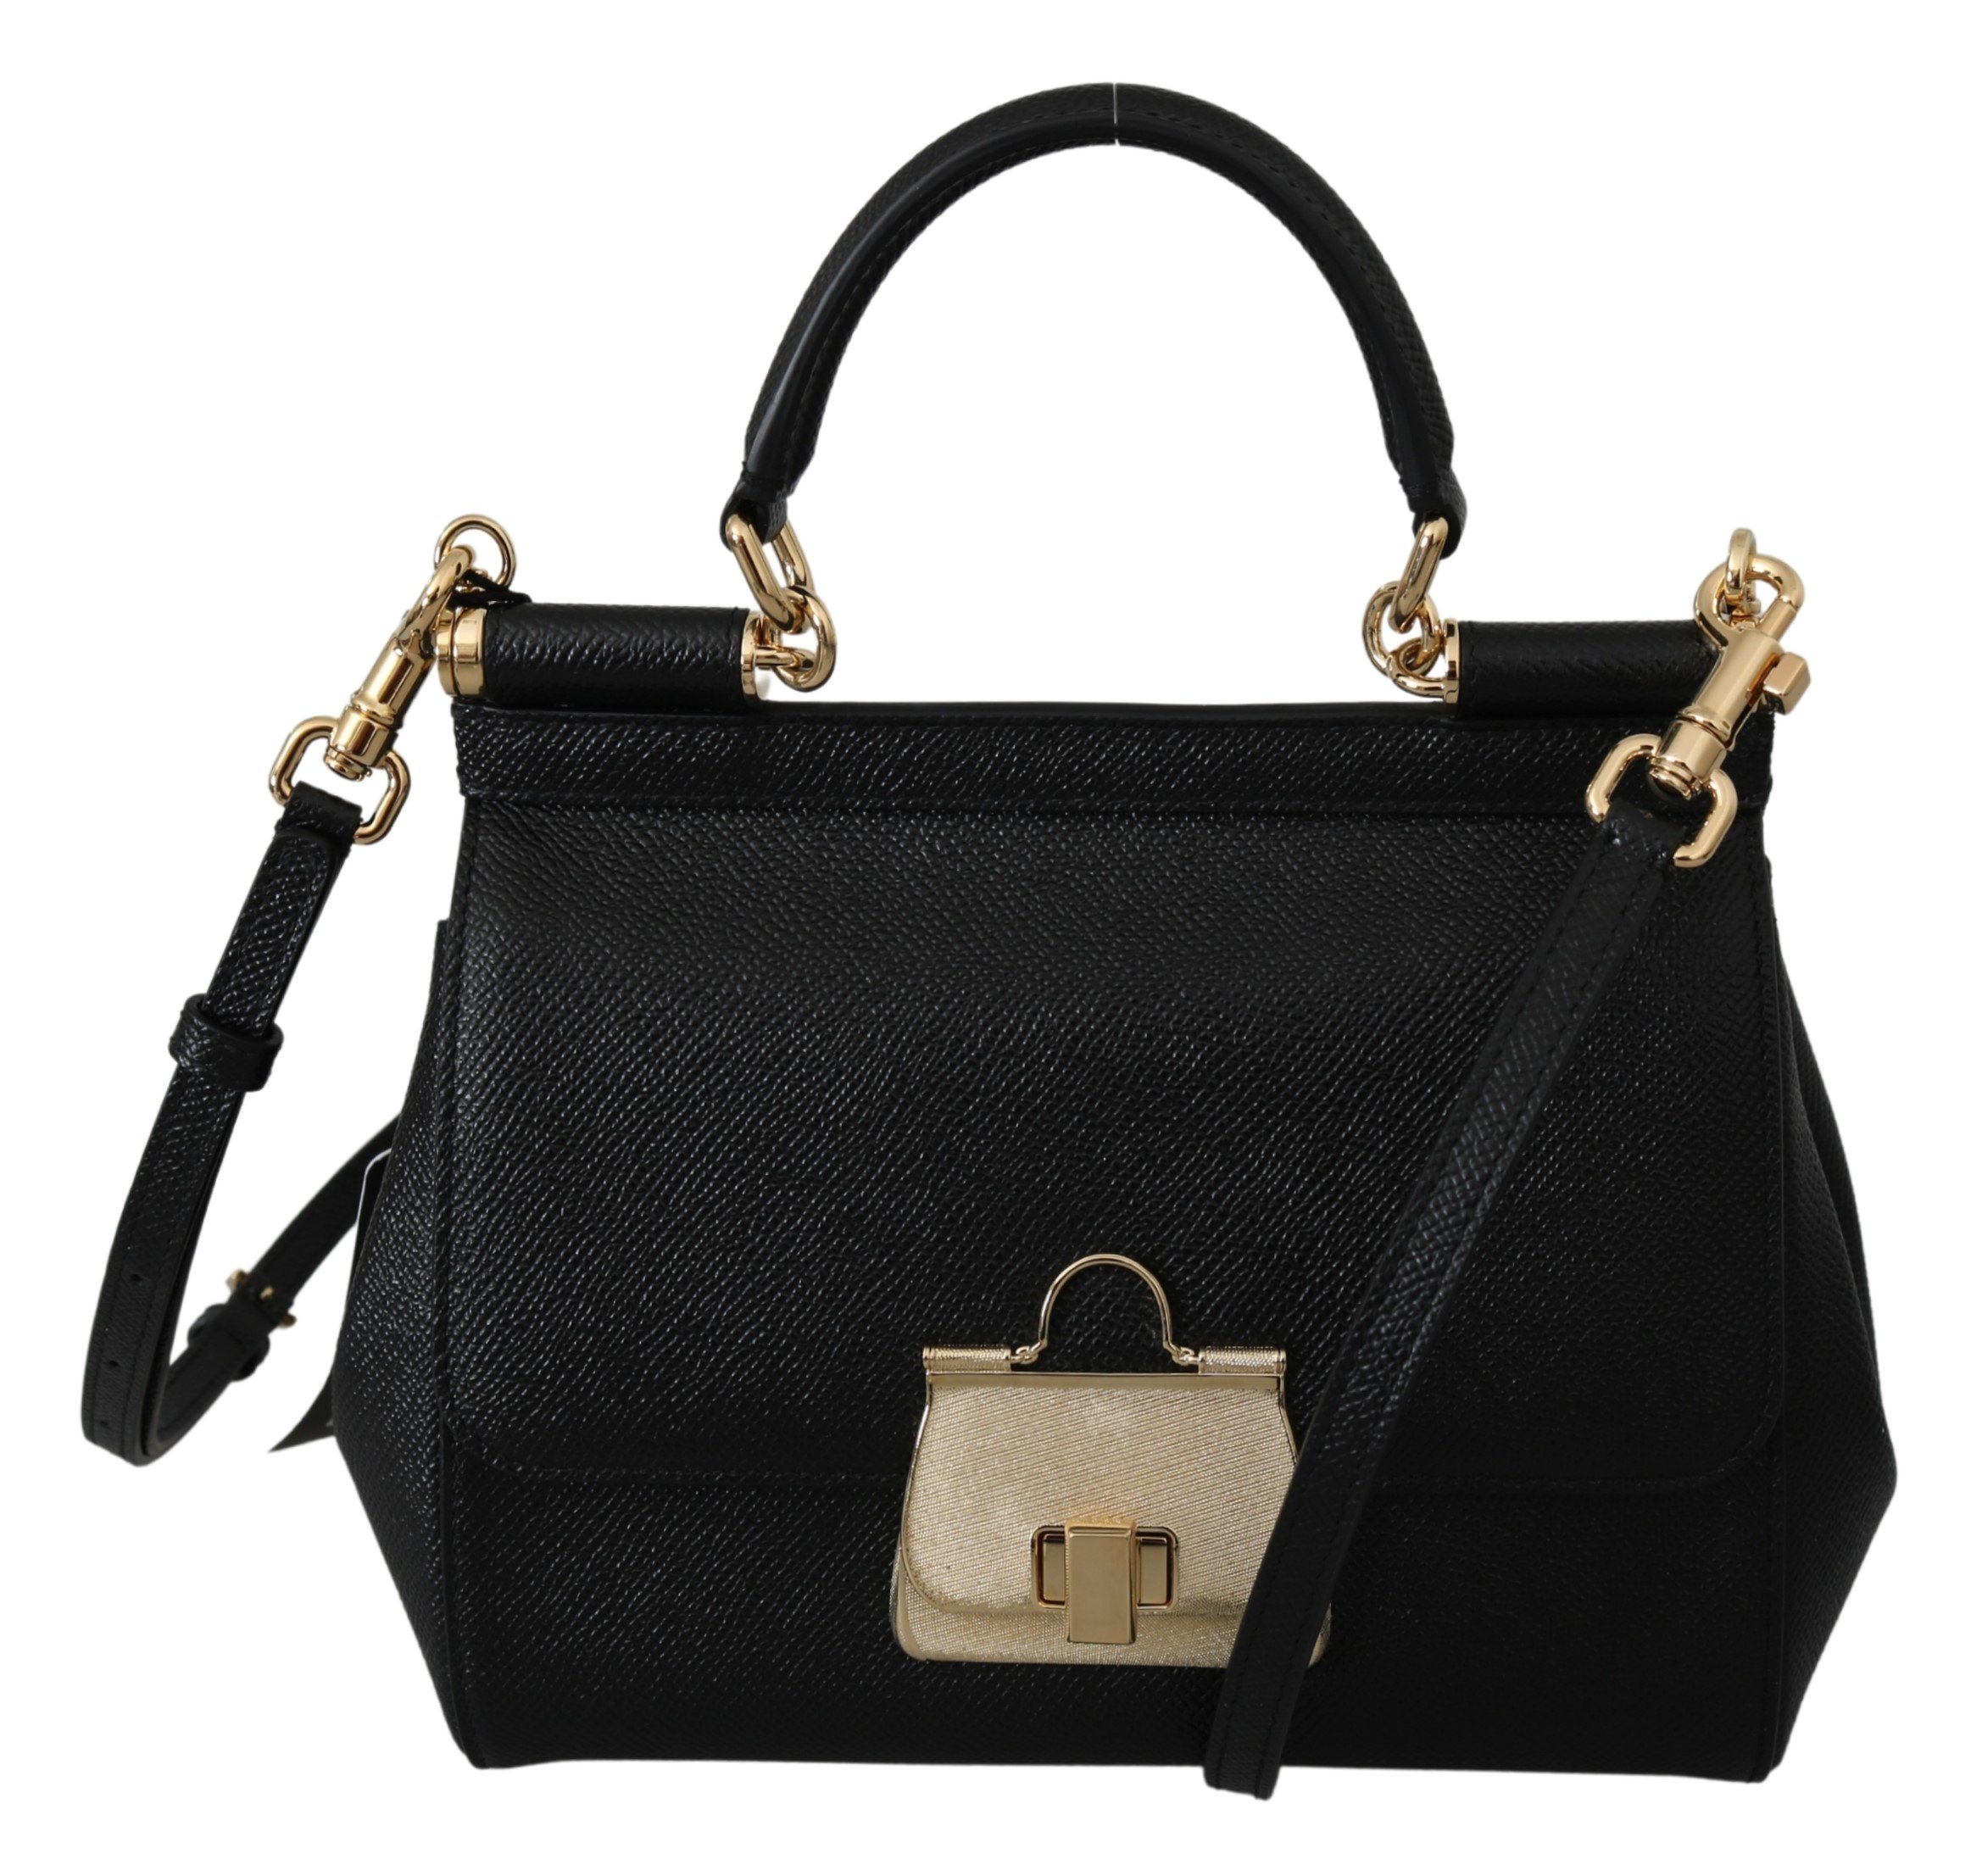 Dolce & Gabbana Women's SICILY Leather Shoulder Bag Black VAS9949